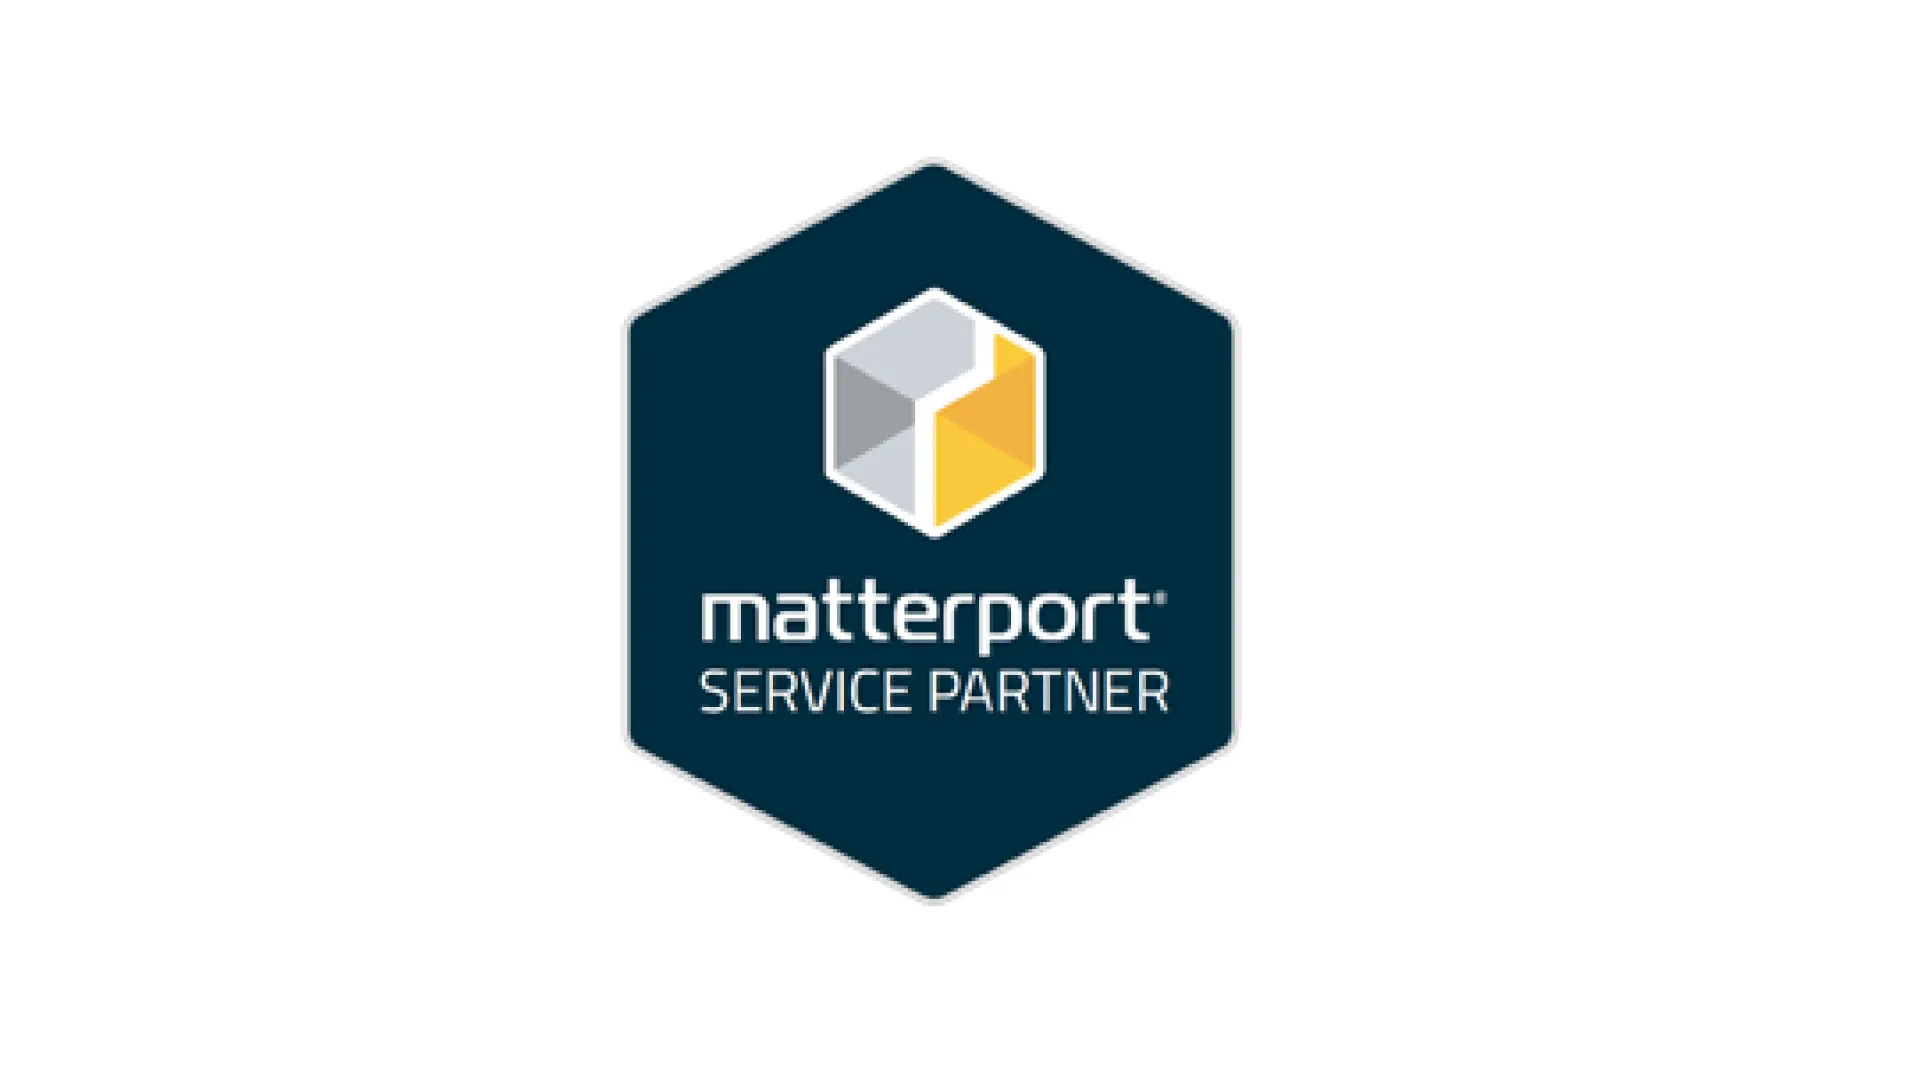 MATTERPORT SERVICE PARTNER